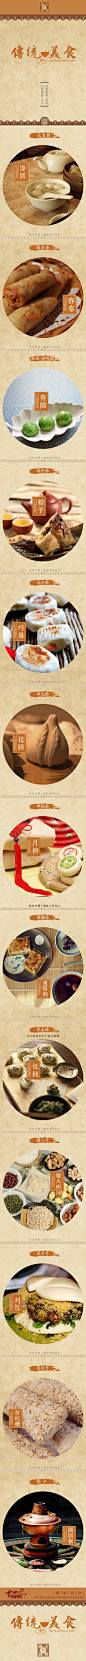 悉数传统节日背后的美食文化——中国传统节日的美食习俗丰富而凝聚着浓浓的亲情和智慧。除夕夜，你团圆了吗？